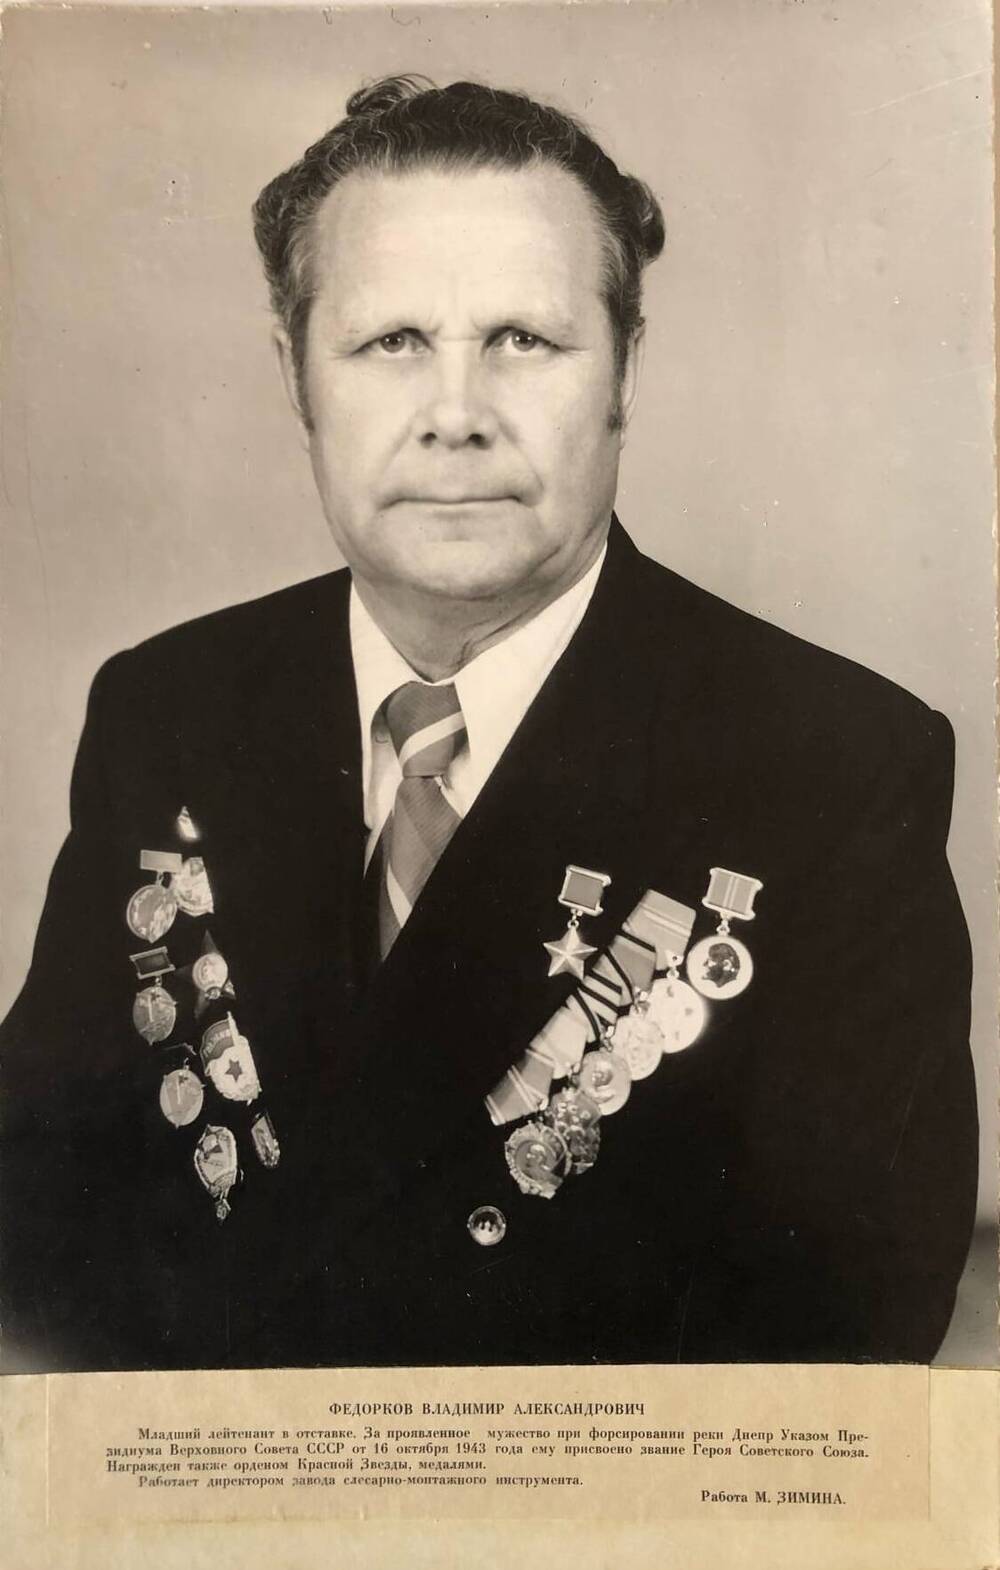 Фотография Федоркова Владимира Александровича, участника Великой Отечественной войны 1941-1945 гг.